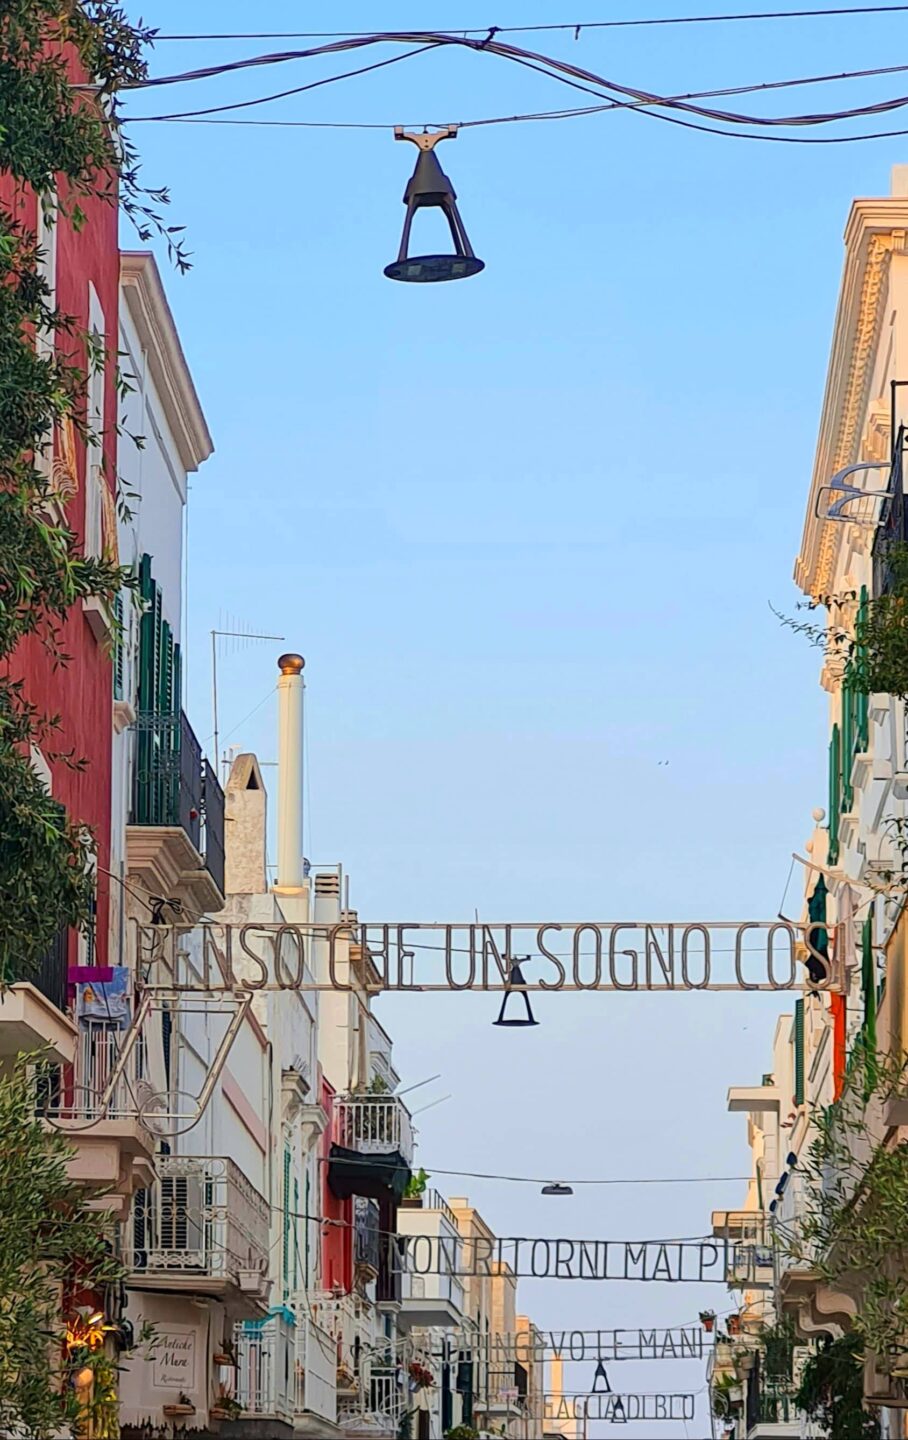 Le parole della canzone di Domenico Modugno sembrano scritte nel cielo sopra Via Roma